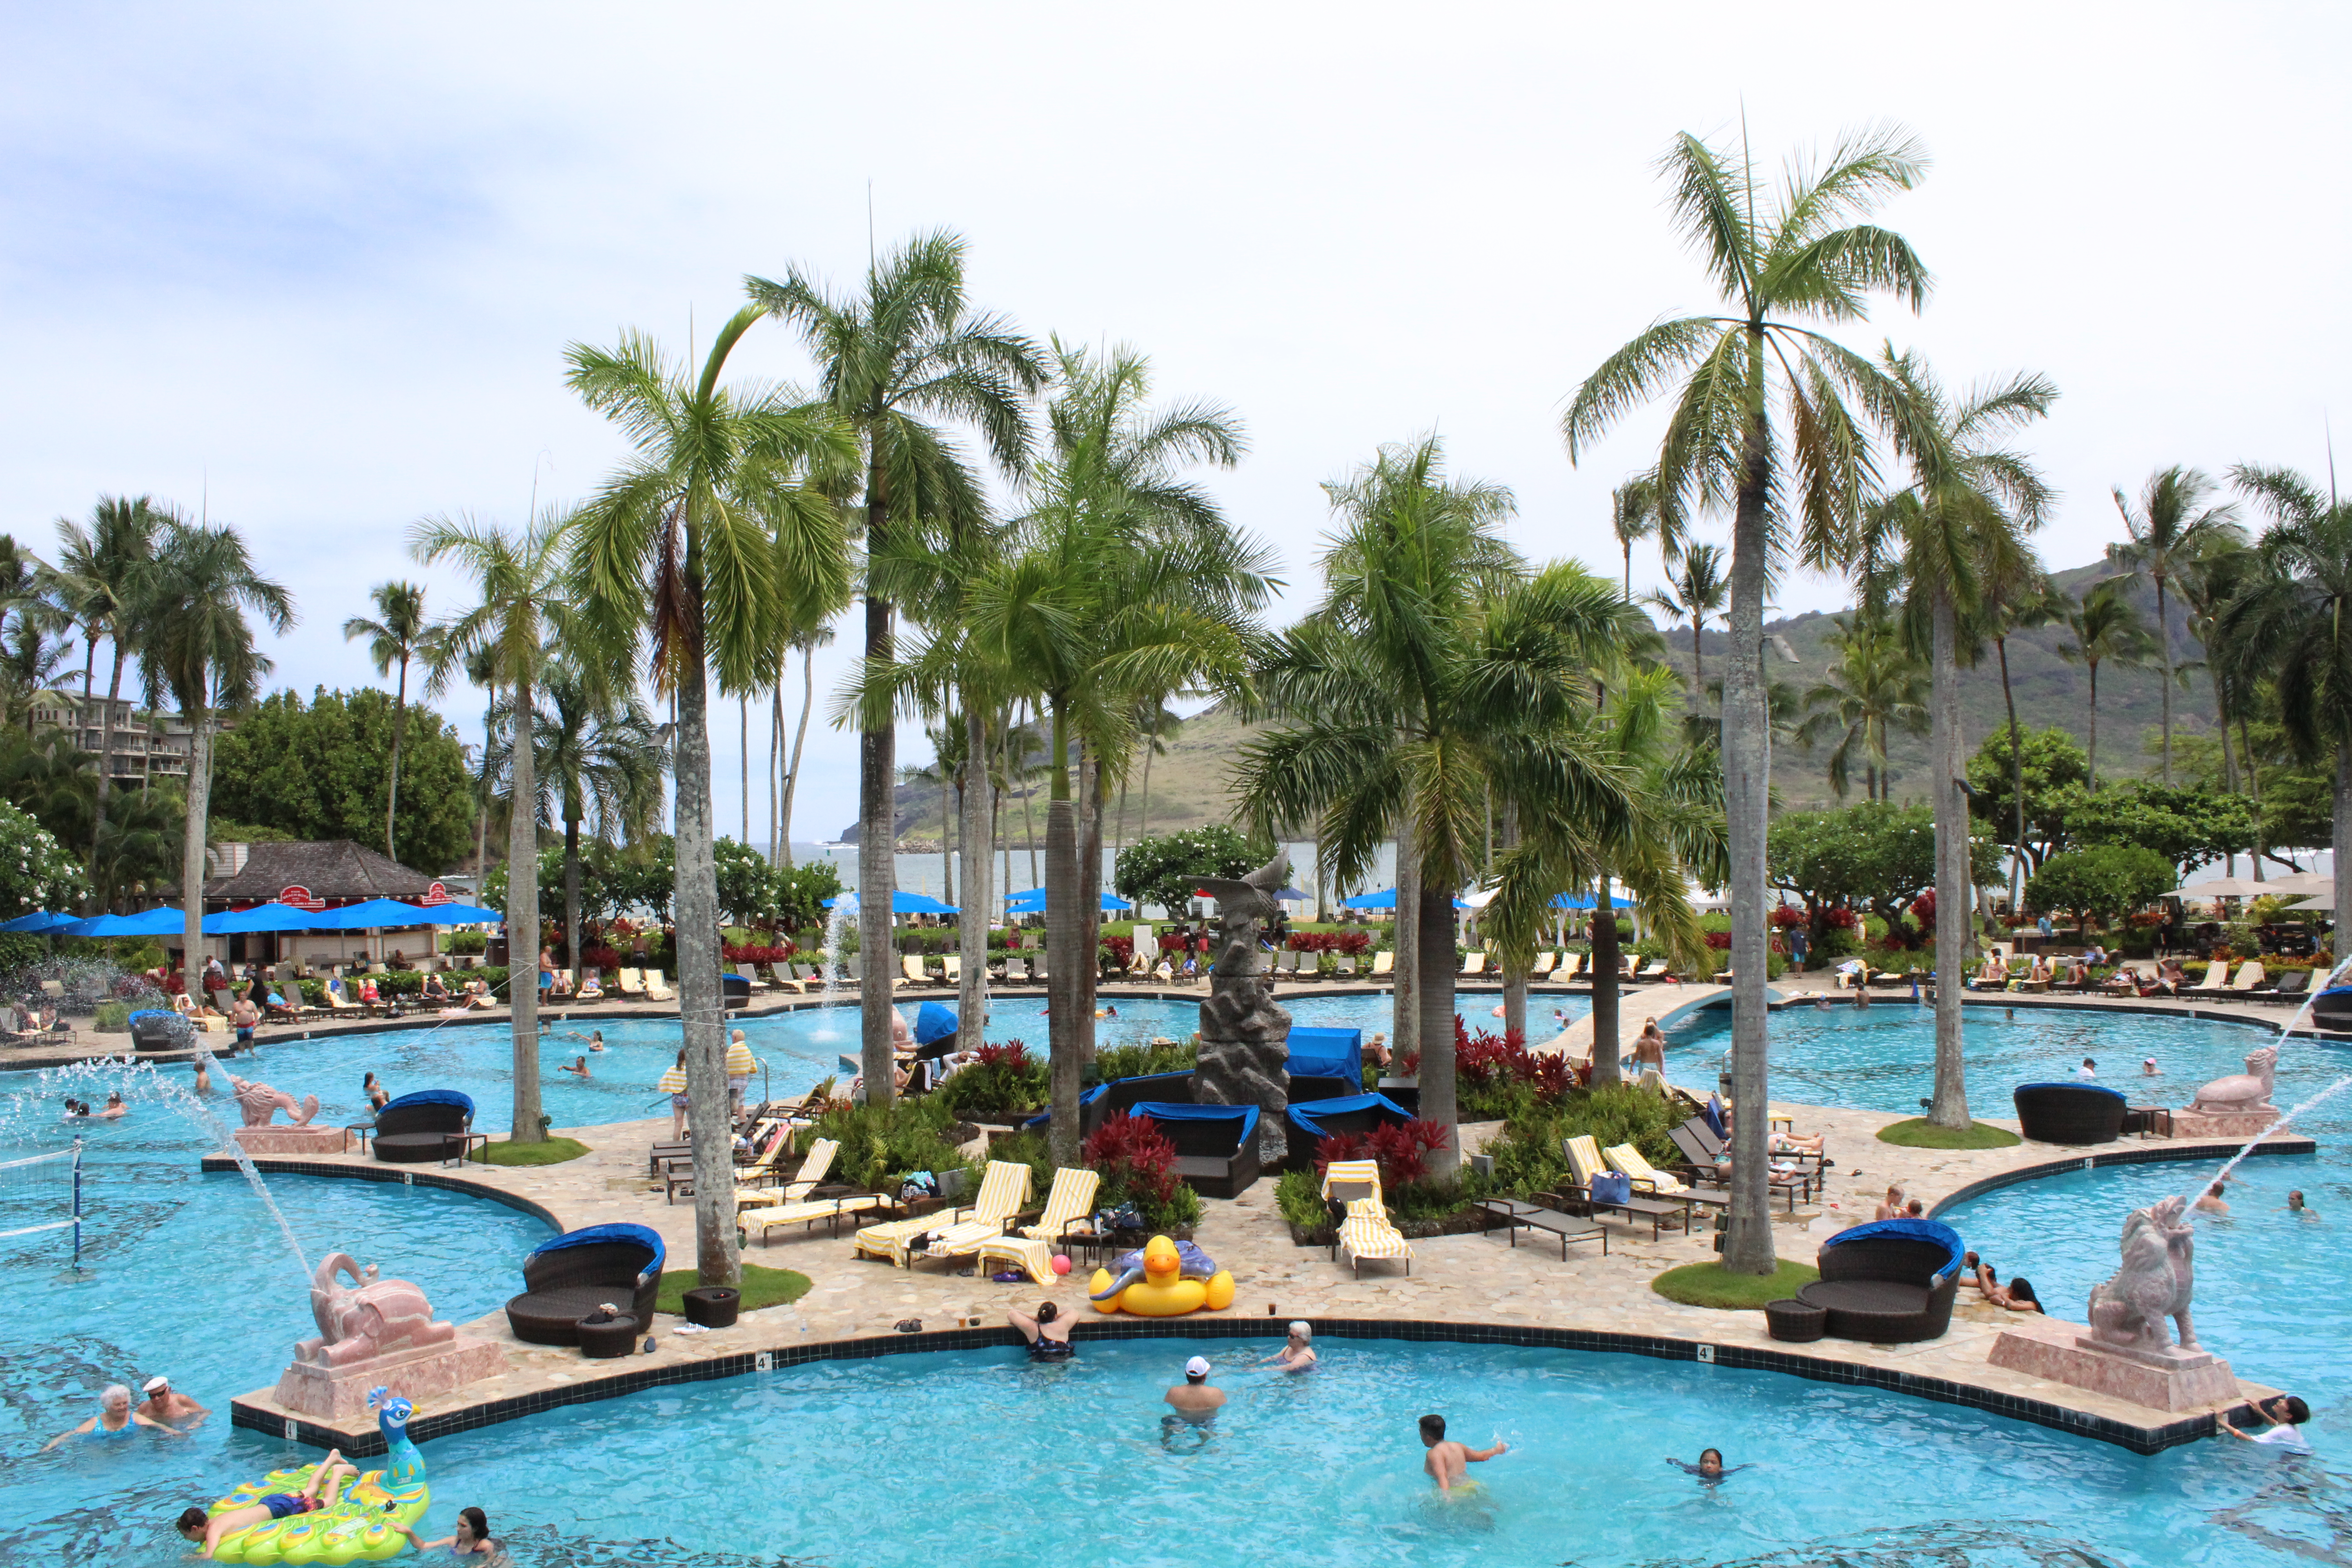 Marriot Resort and Spa, Lihue, Kauai